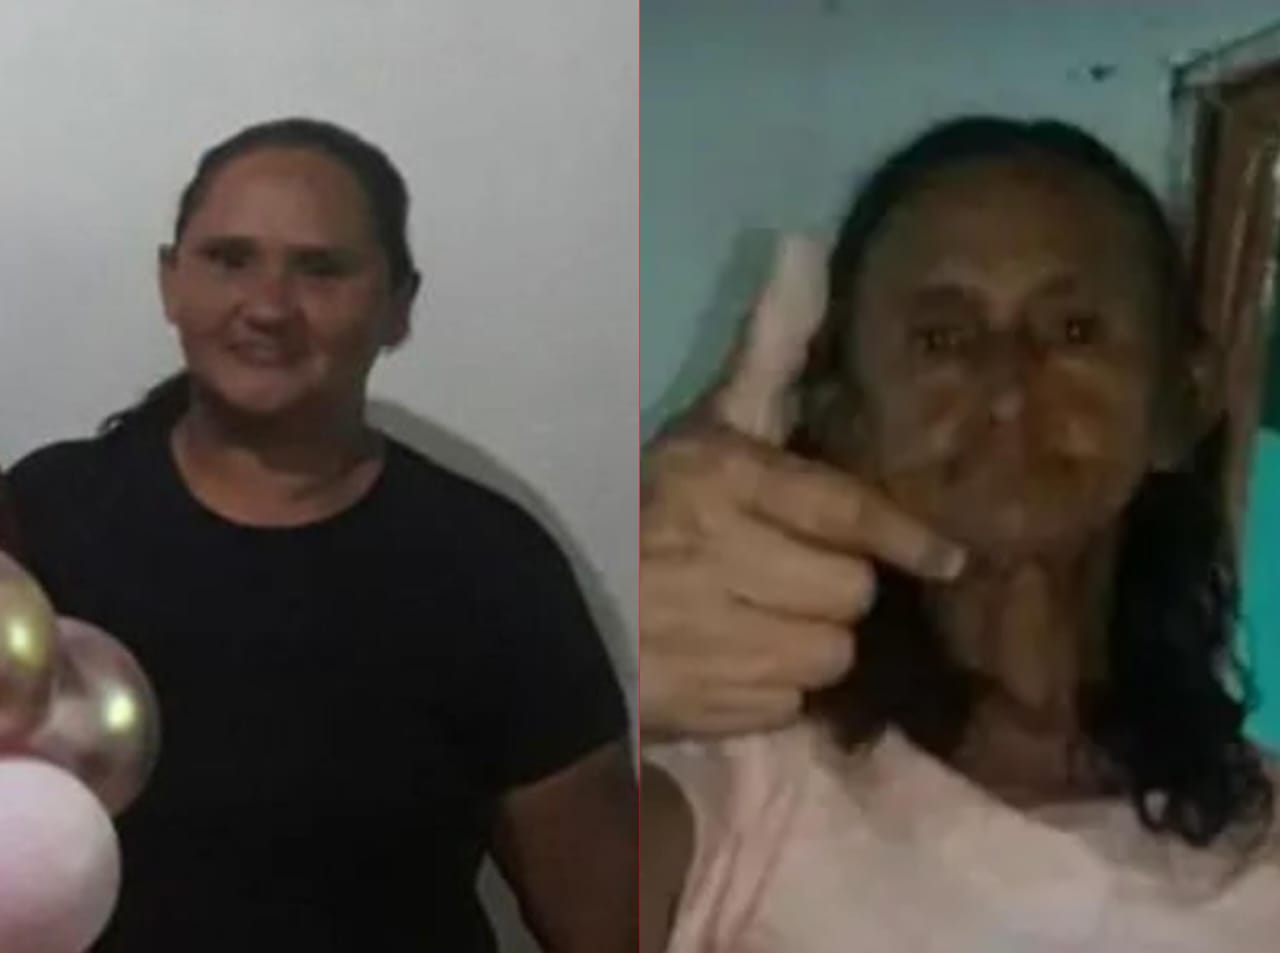 Mulher é assassinada com golpes de faca e filha fica ferida, em Caruaru, acusado fugiu após o crime